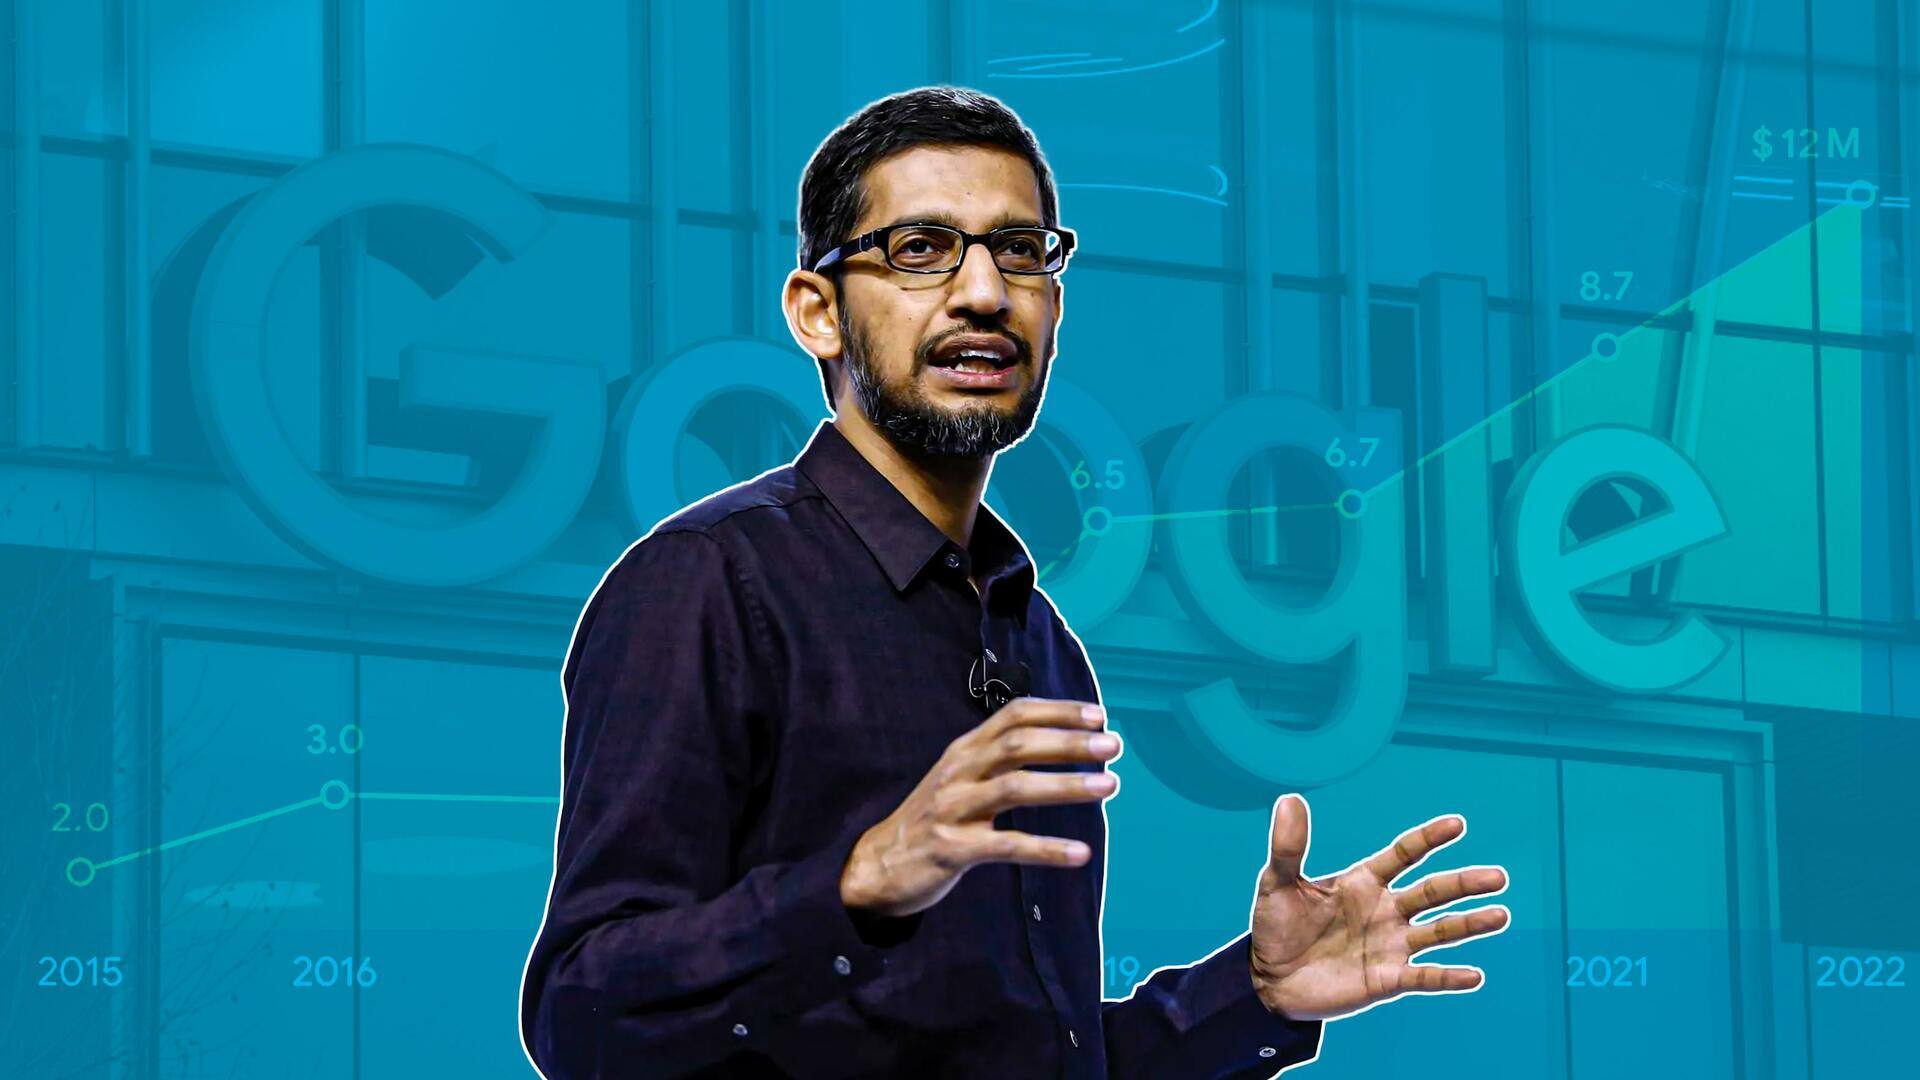 गूगल ने बग खोजने वालों को 2022 में दिया रिकॉर्ड 100 करोड़ रुपये इनाम